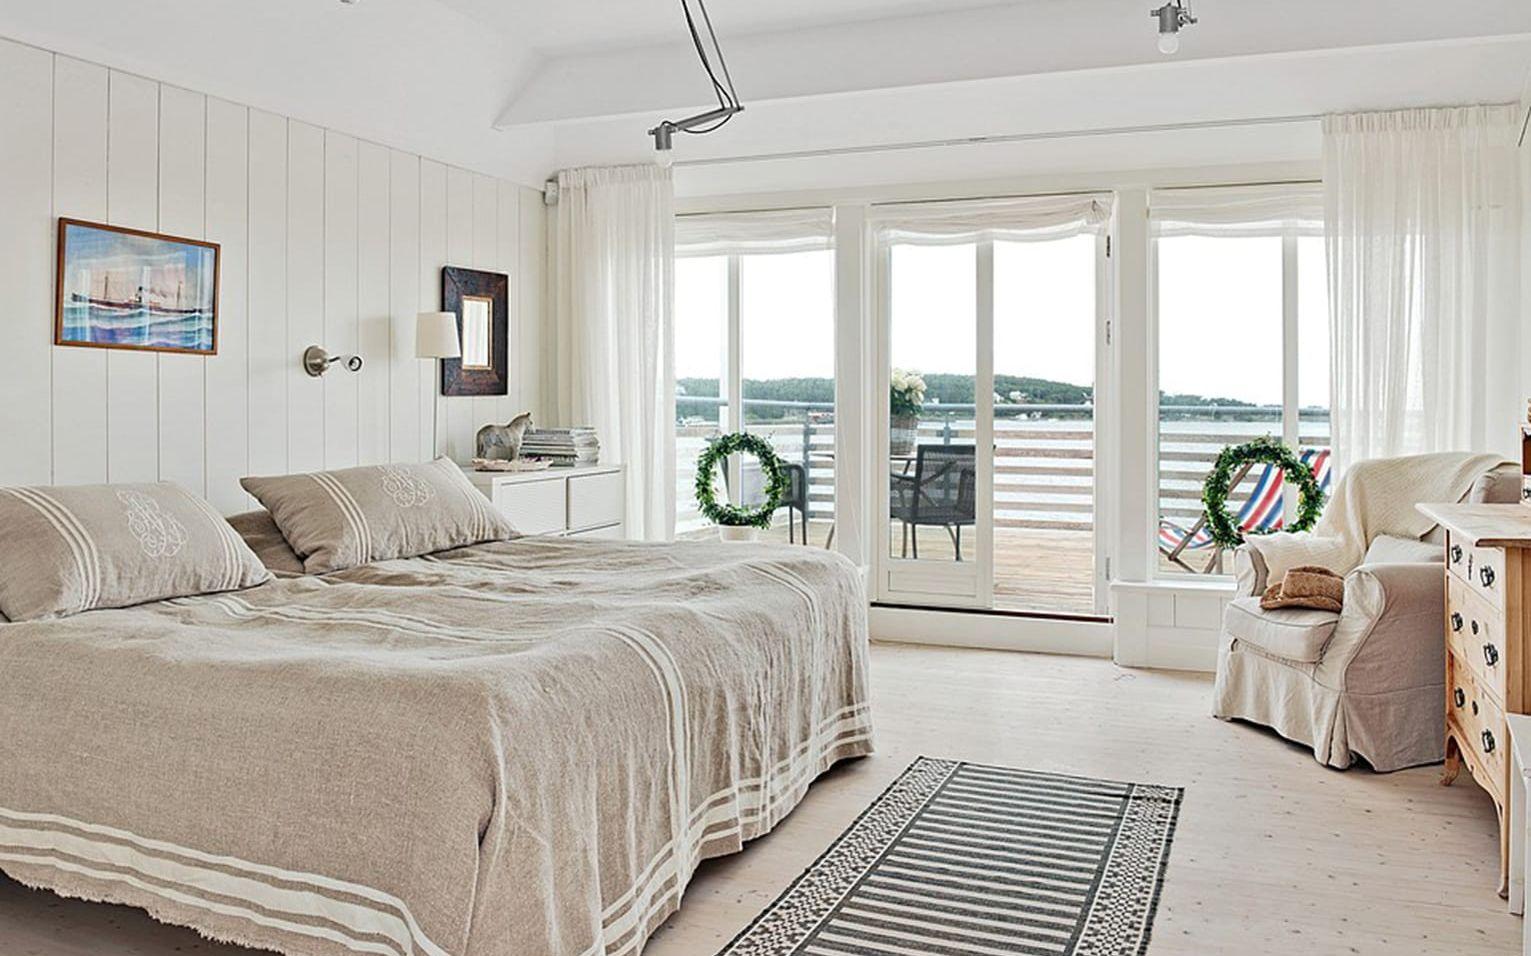 Huset har flera sovrum – här är ett av dem. Foto: Fredrik Karlsson/SE360